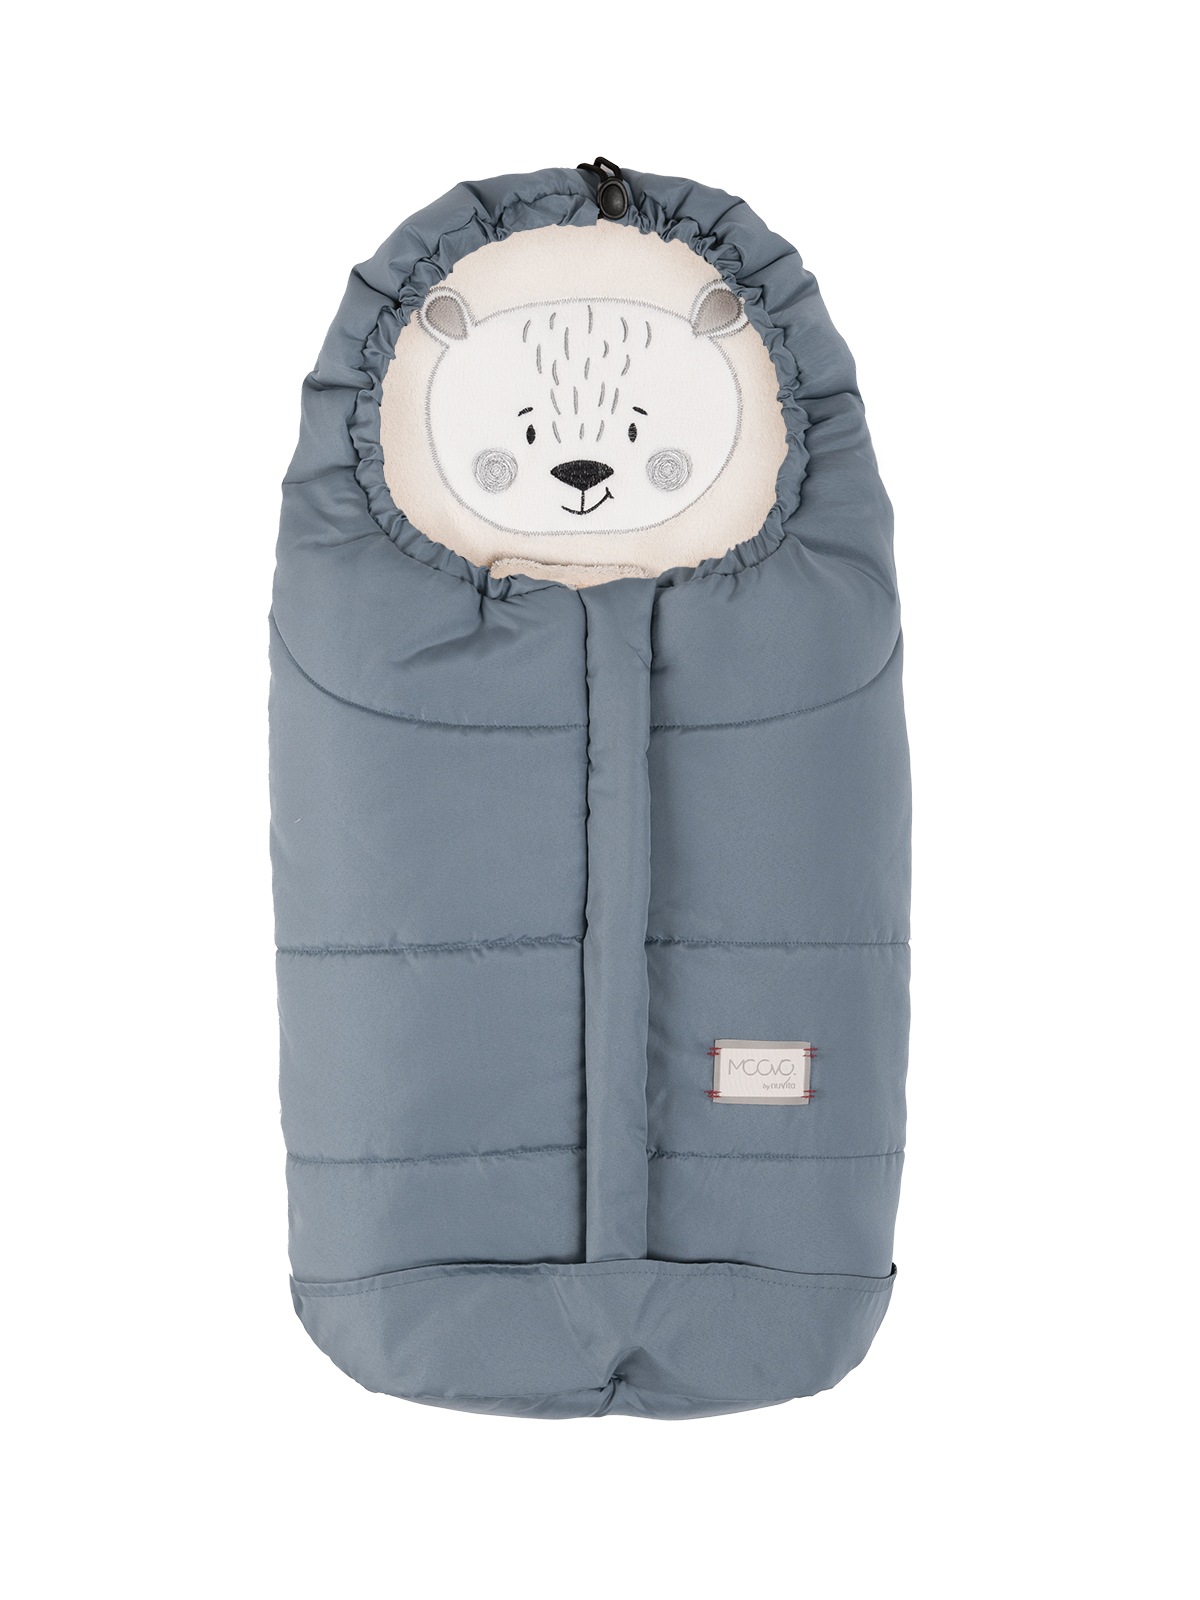 sacco coperta ovetto ergonomica 0-6 mesi - Tutto per i bambini In